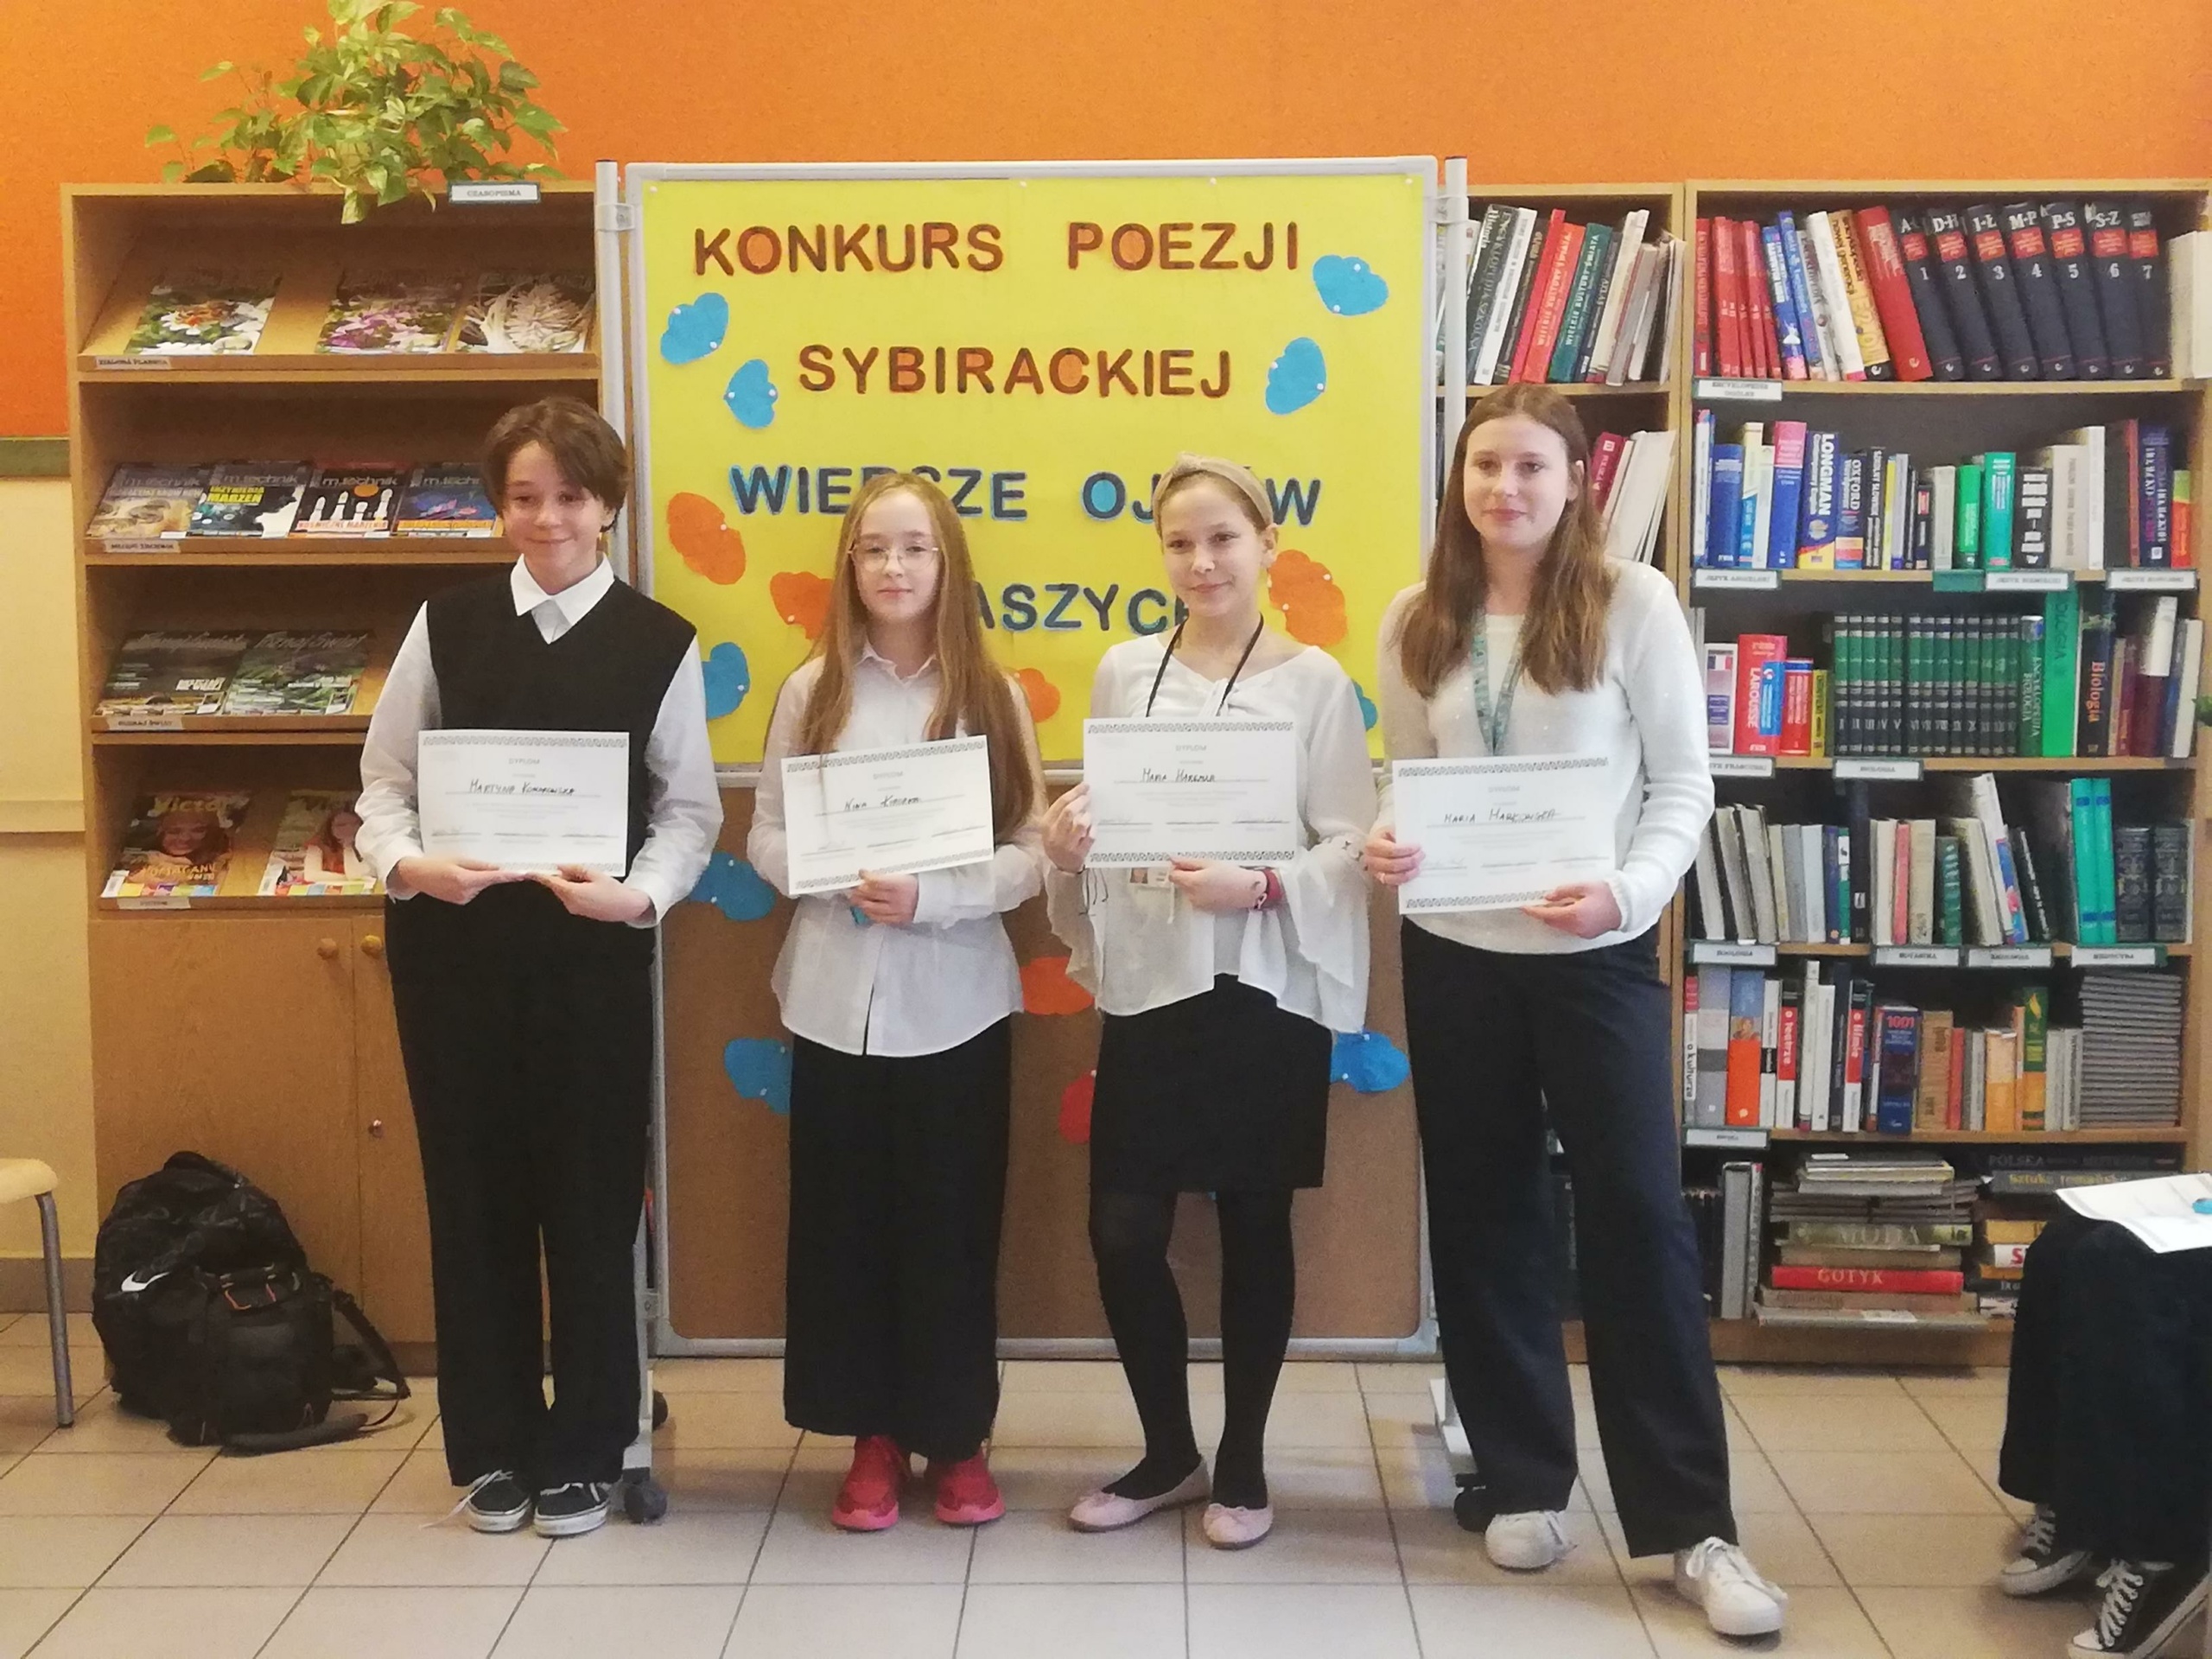 Wybraliśmy reprezentantów do VI Dolnośląskiego Konkursu Poezji Sybirackiej „Wiersze ojców naszych”!